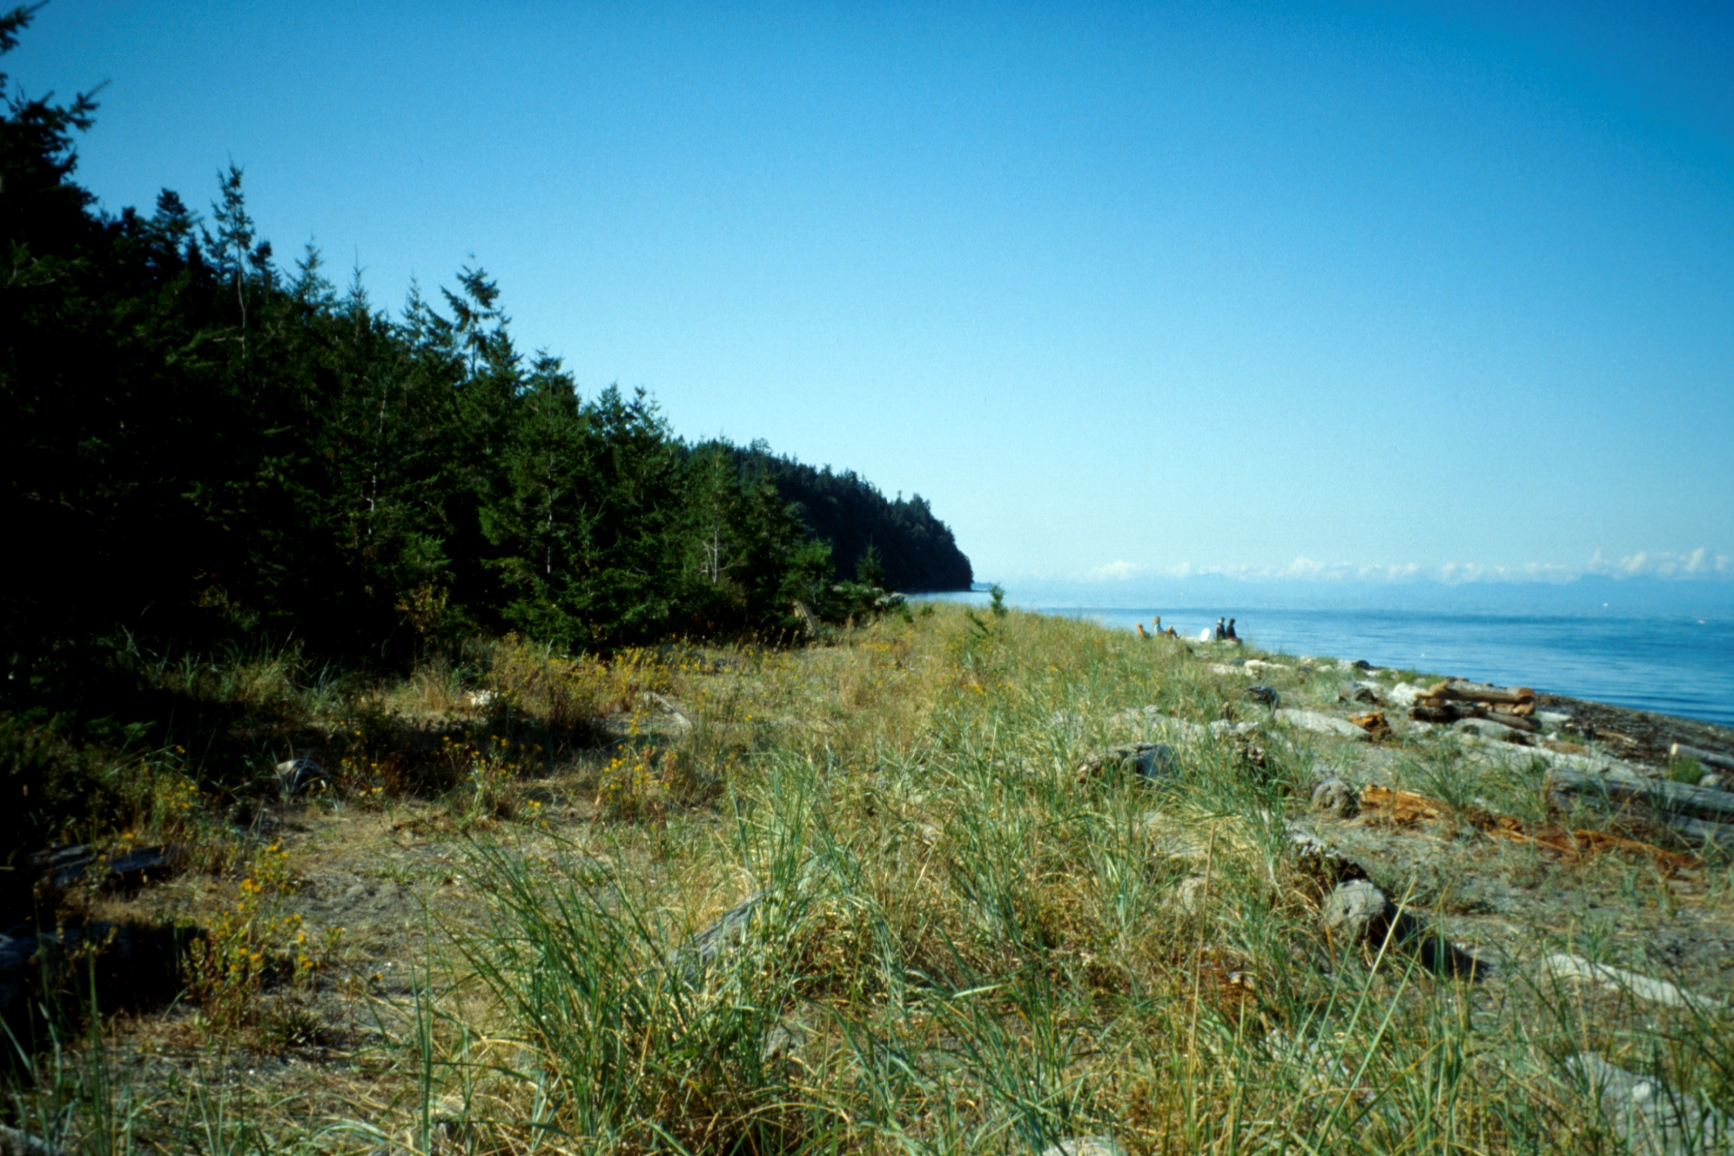 View of seaside landscape